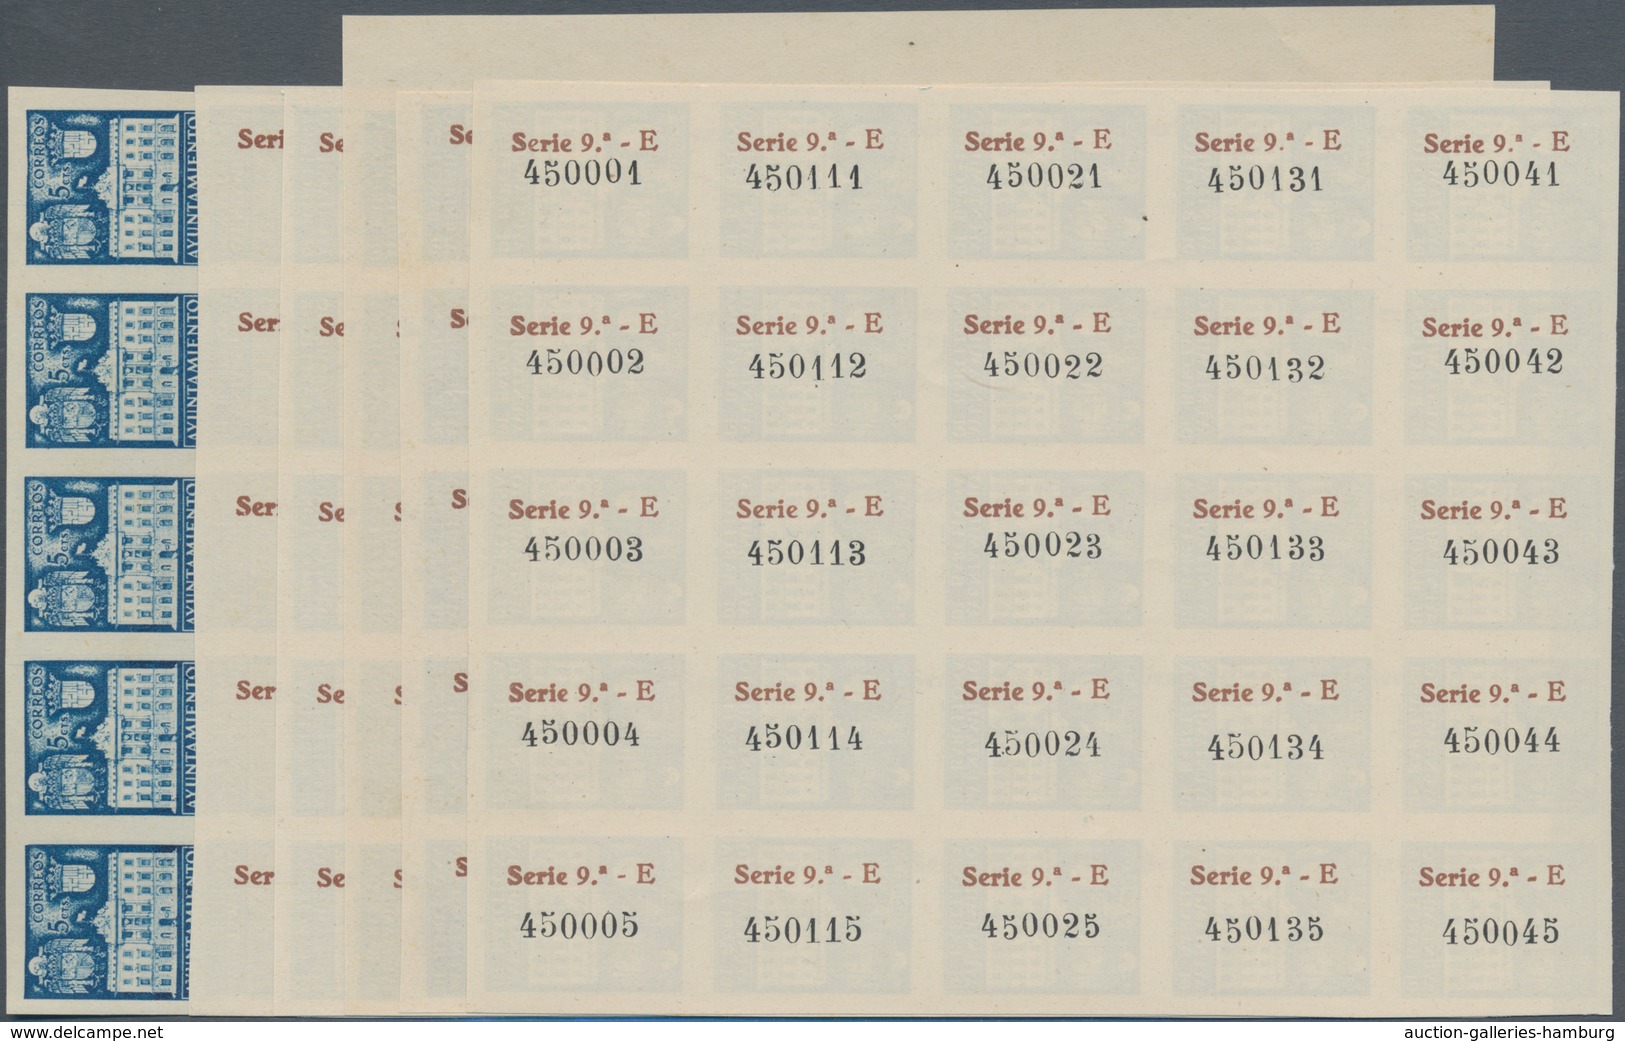 Spanien - Zwangszuschlagsmarken Für Barcelona: 1942, Town Hall Of Barcelona 5c. Blue In Five IMPERFO - War Tax